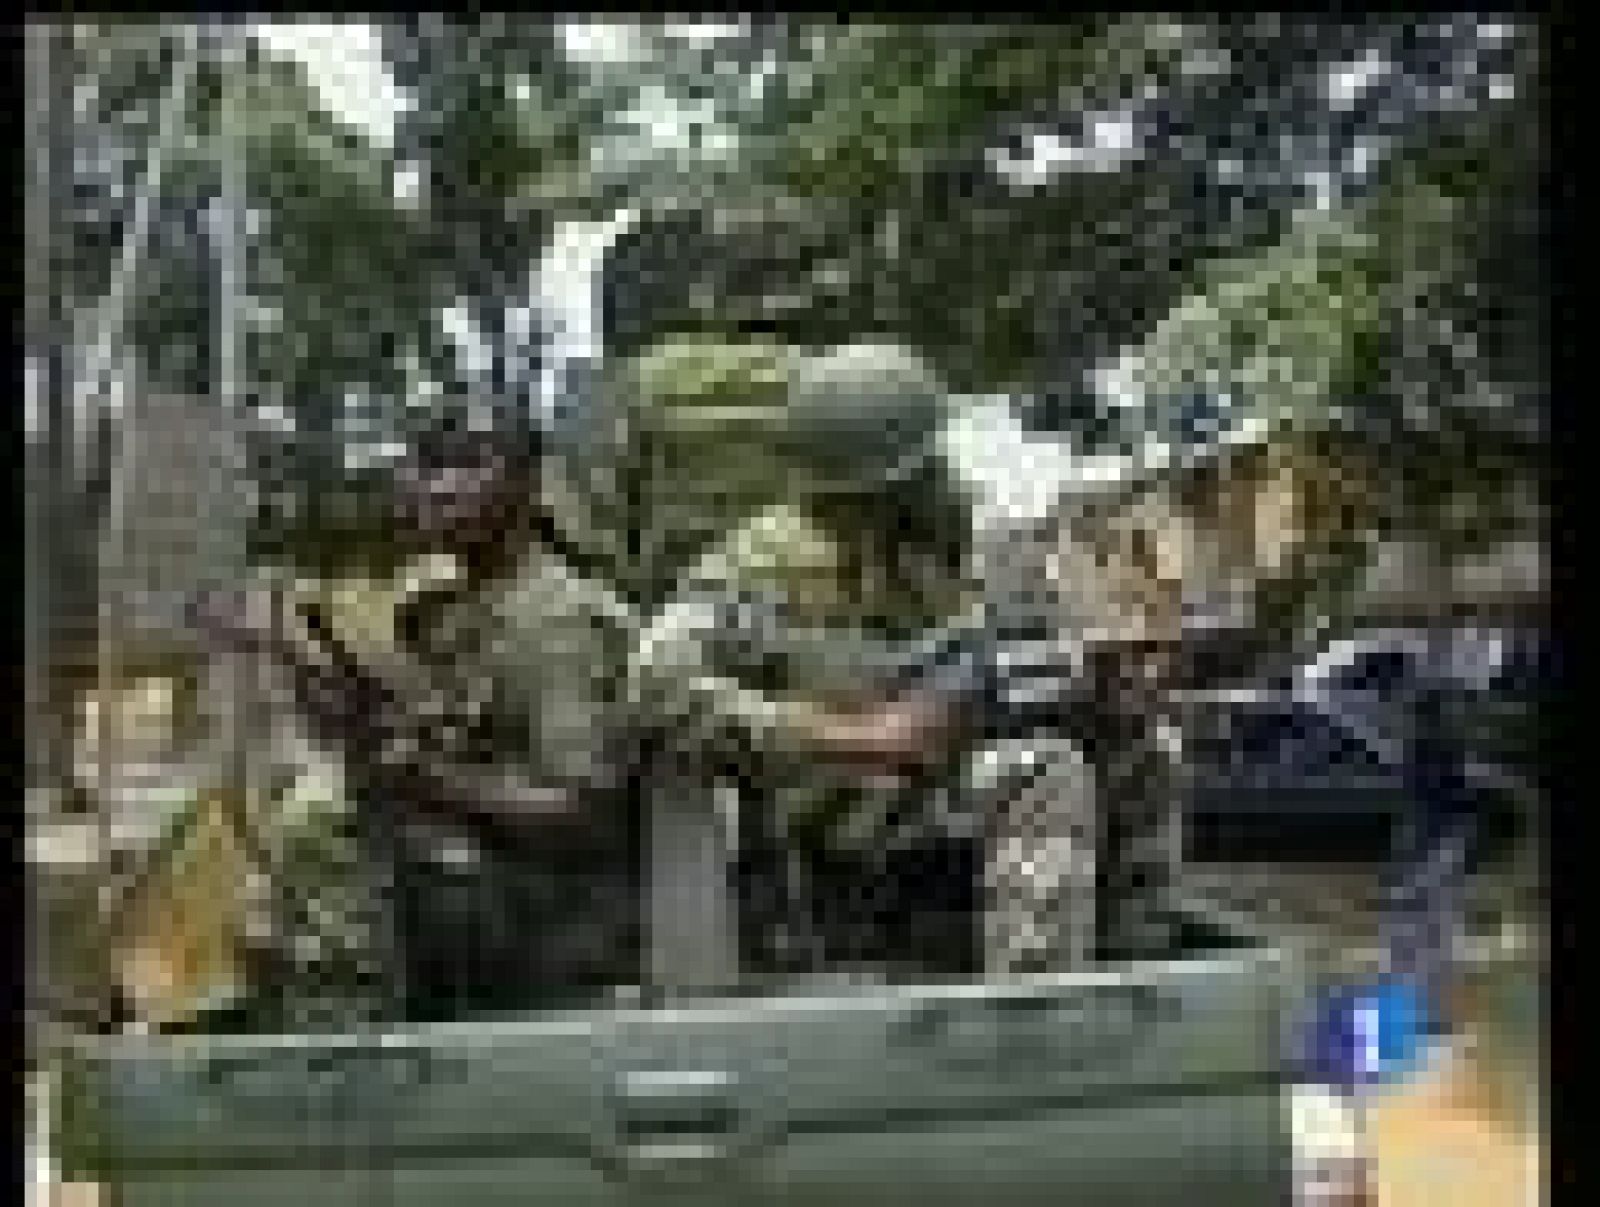  Continuan los combates en Abiyán